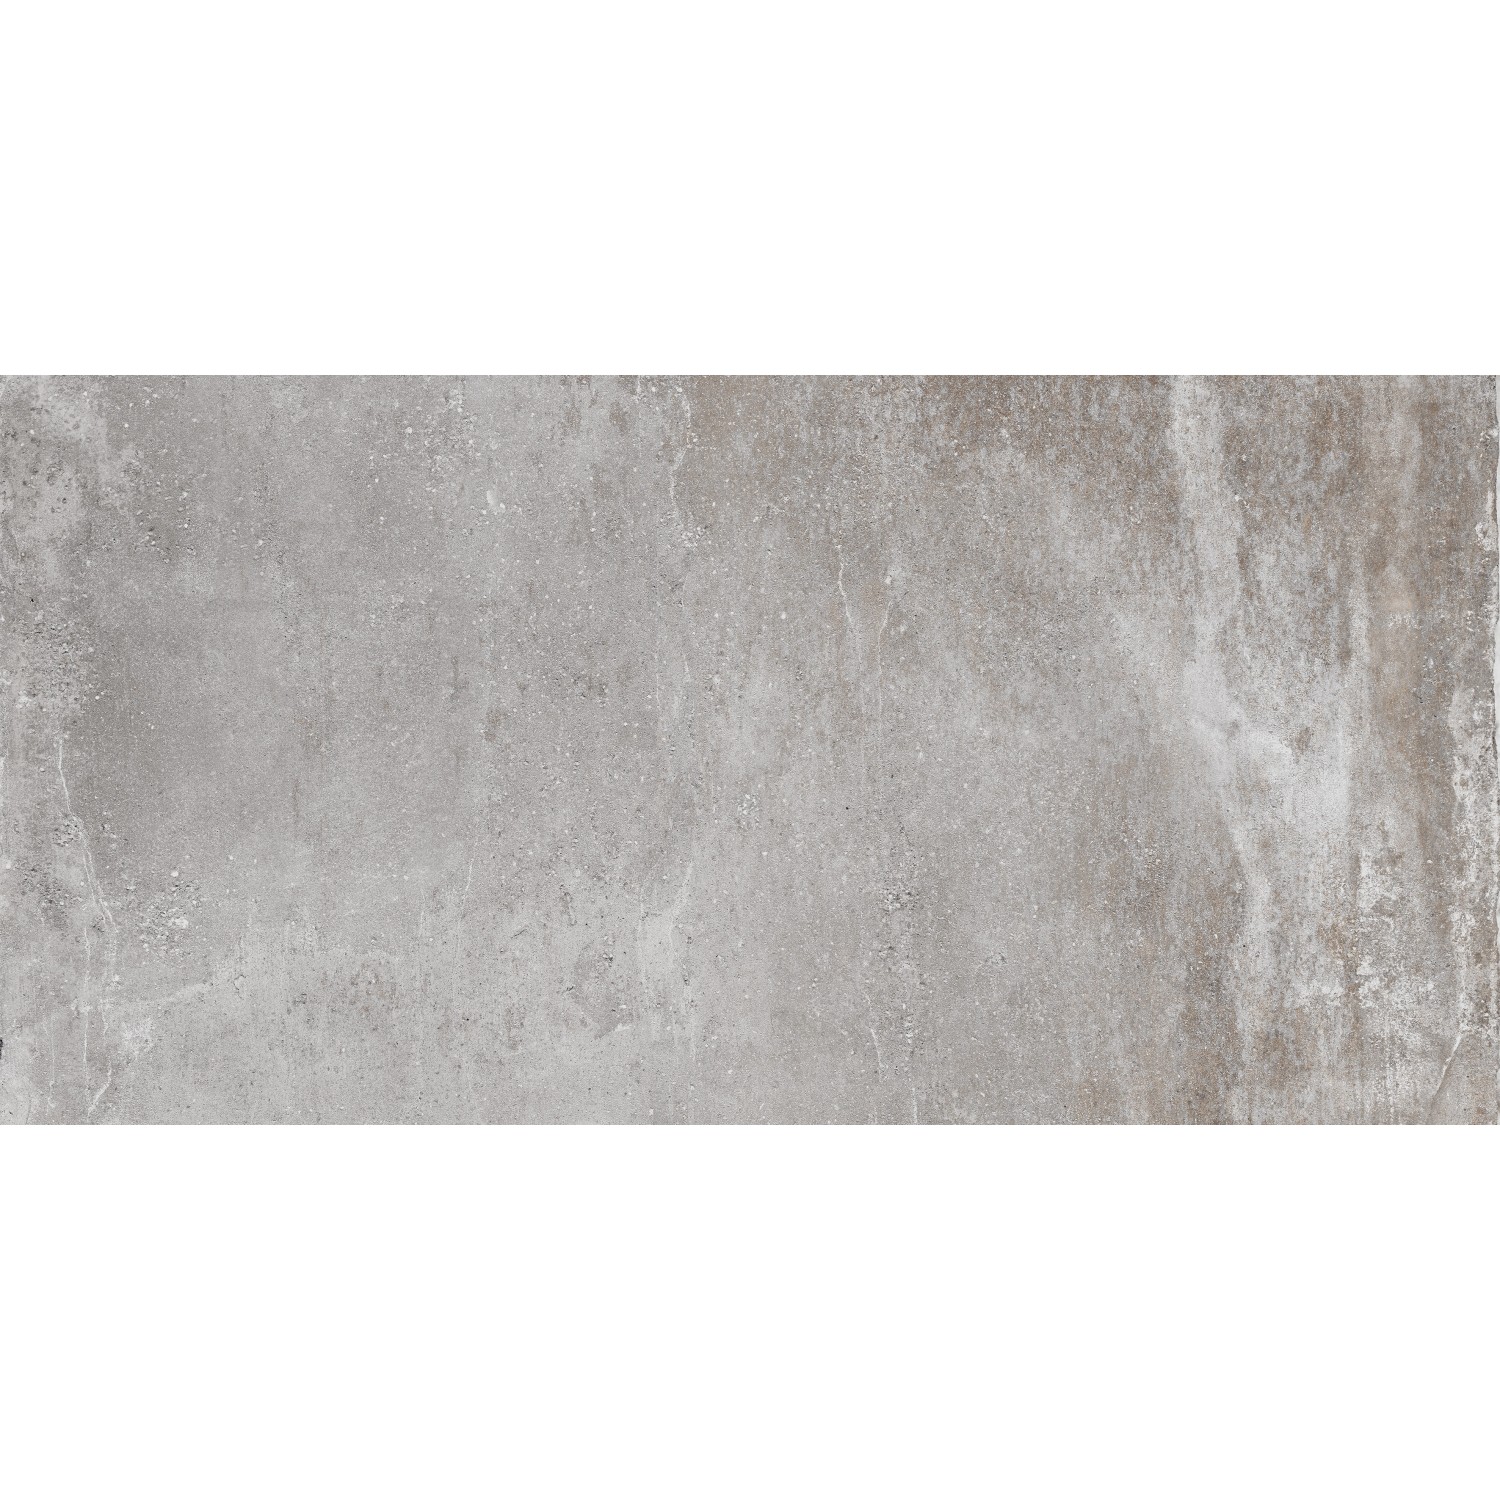 Bodenfliese Spectra Feinsteinzeug Grau Glasiert Poliert 286 cm x 58 cm